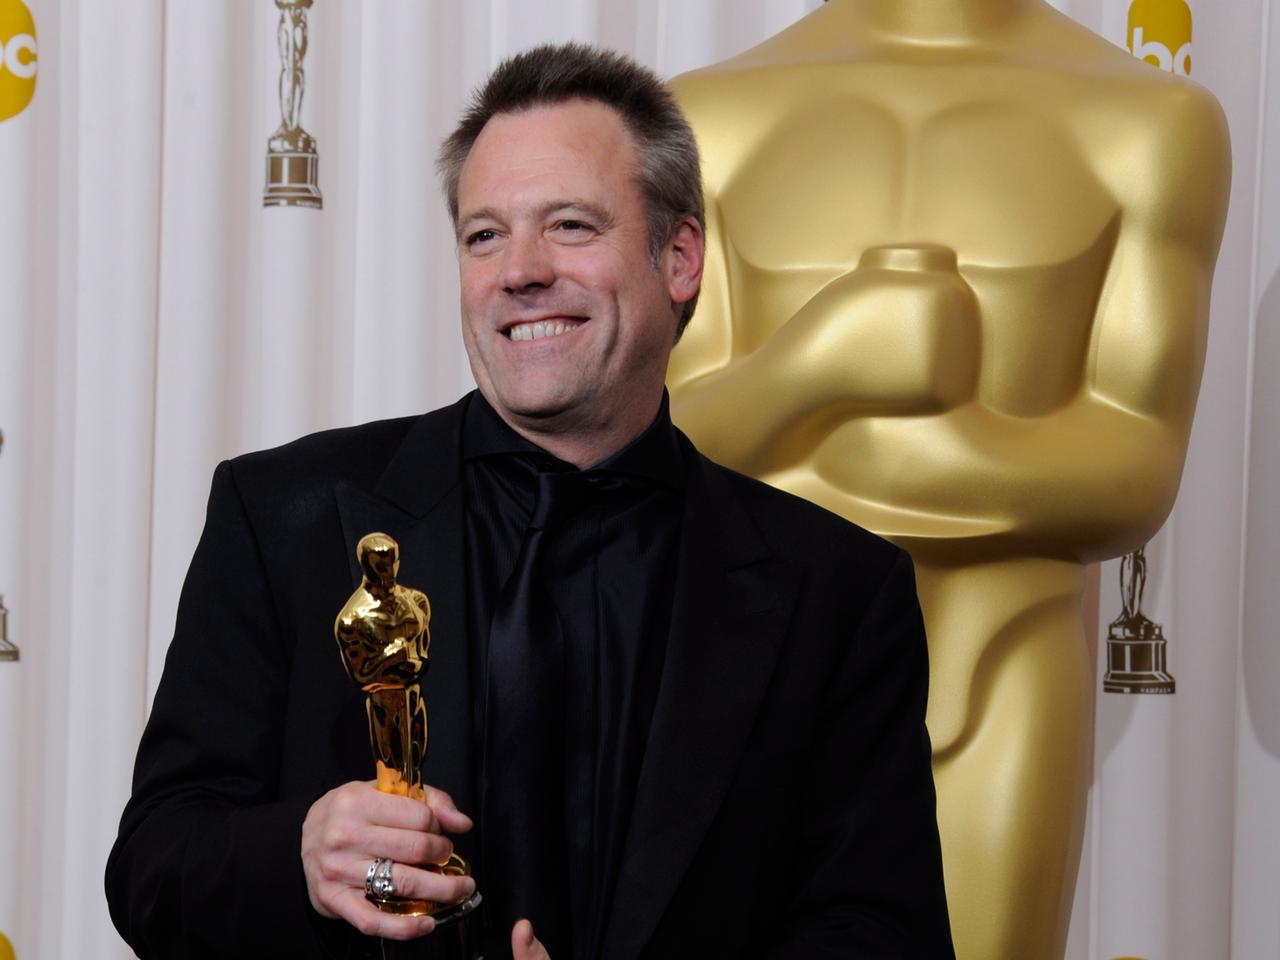 Wally Pfister lächelt in die Kameras, seinem Oscar für die beste Kamera im Film "Inception" bei den 83. Academy Awards 2011 in der Hand.